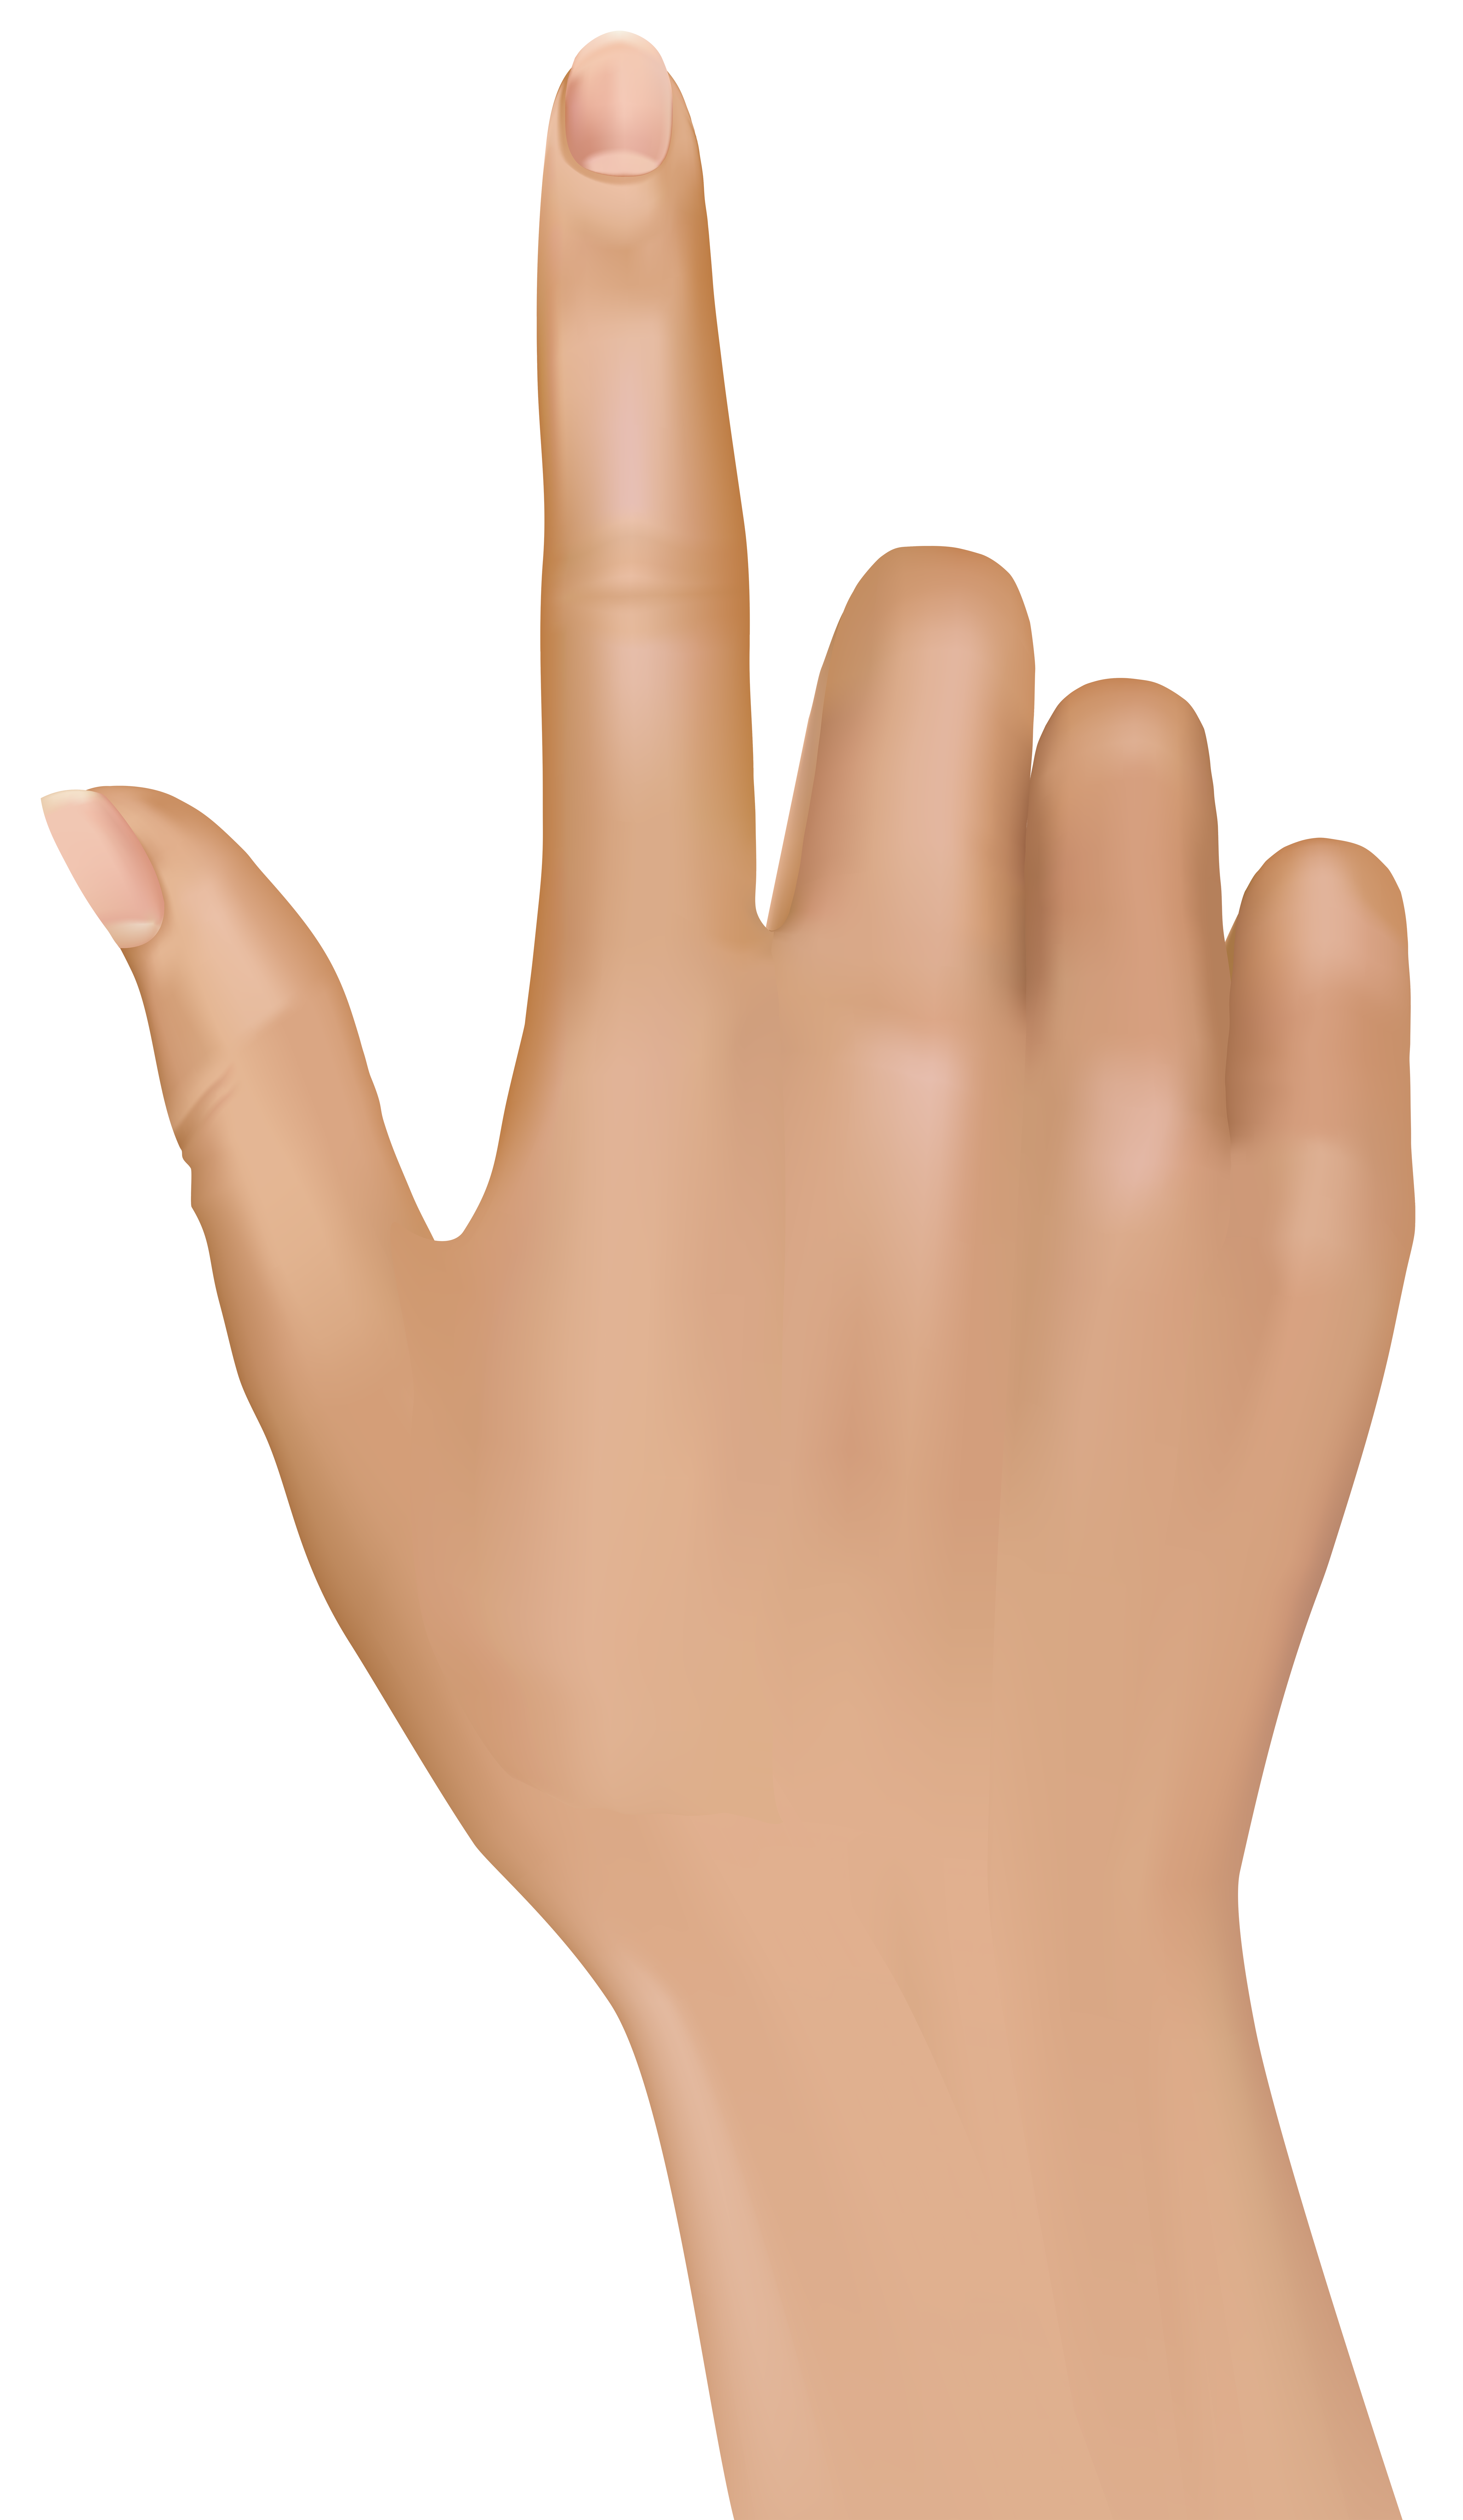 Finger at getdrawings com. Handprint clipart high five